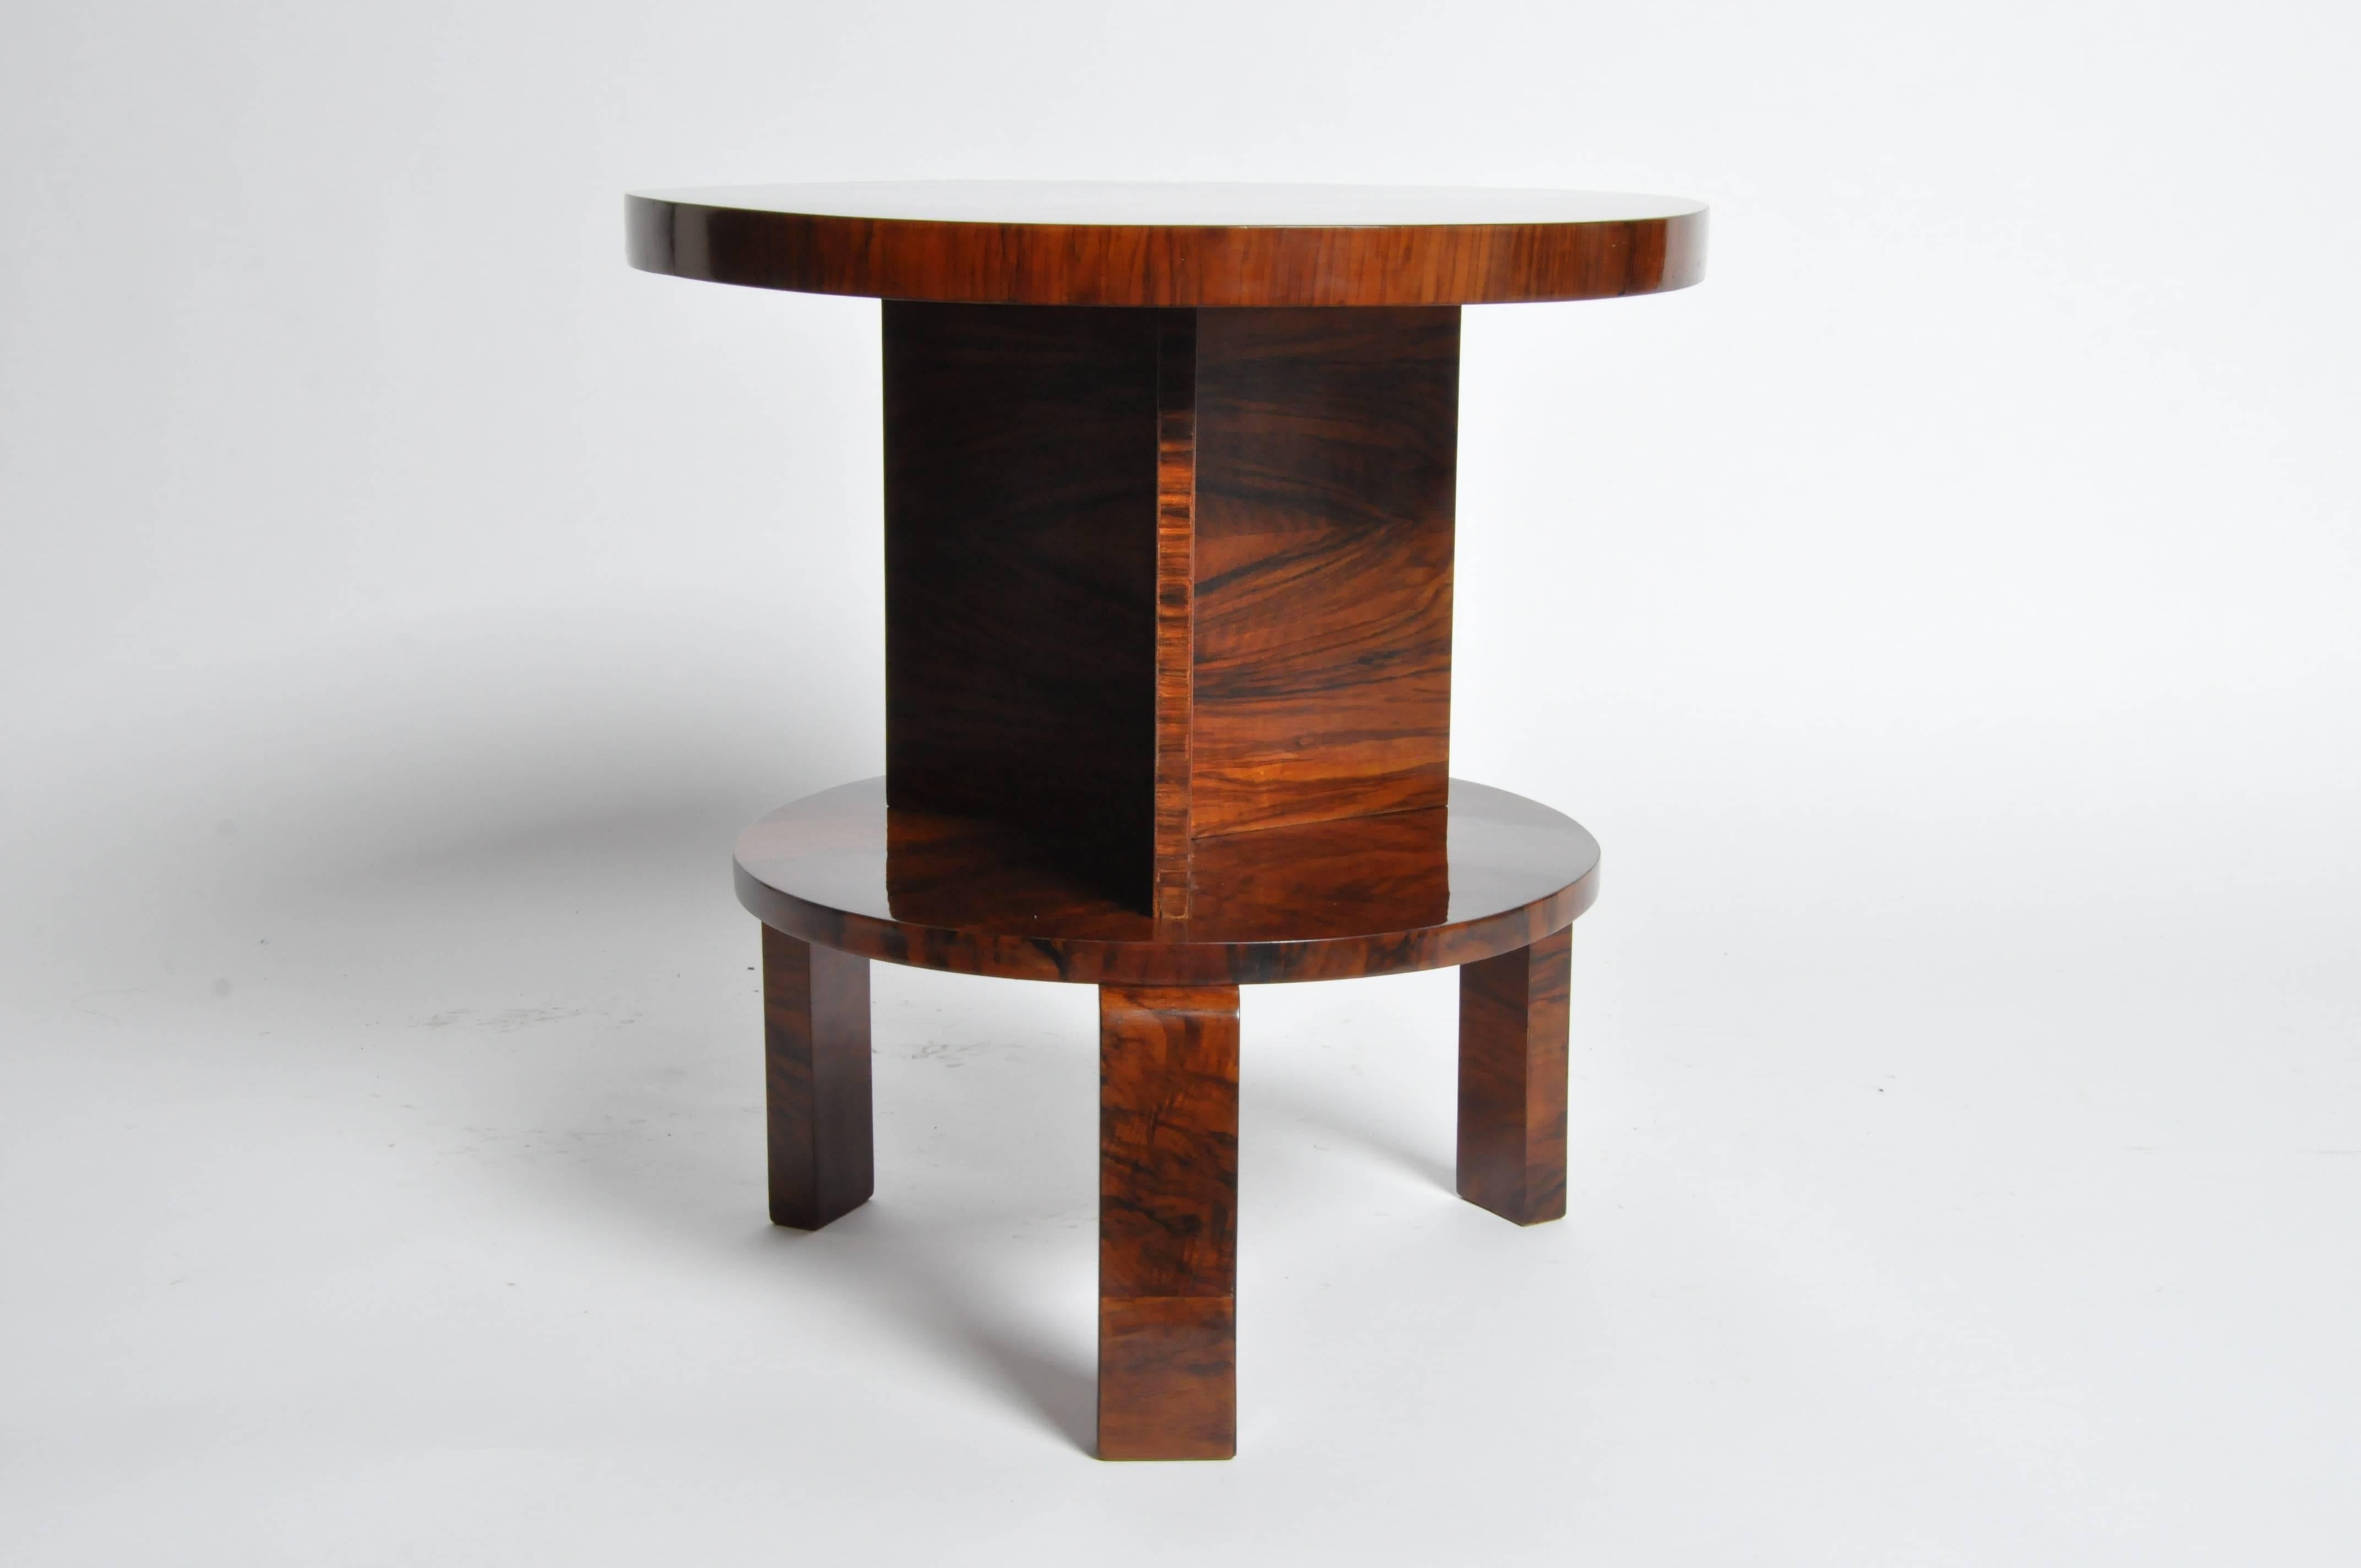 Walnut Art Deco Round Table with Shelf